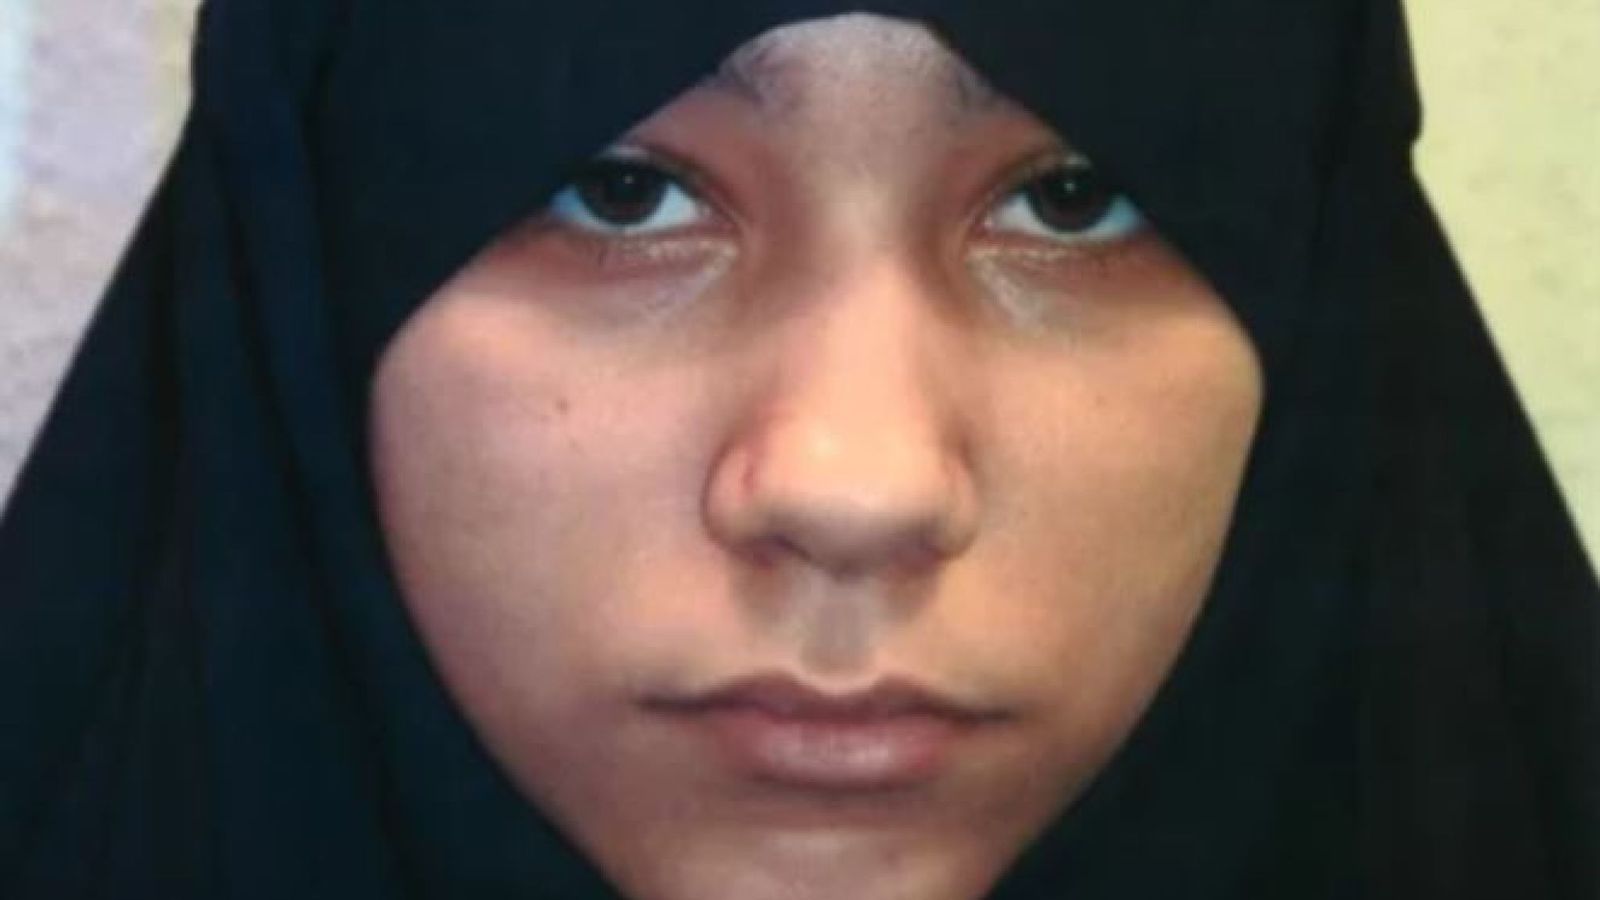  دختر نوجوان انگلیسی به اتهام تروریستی محکوم شد